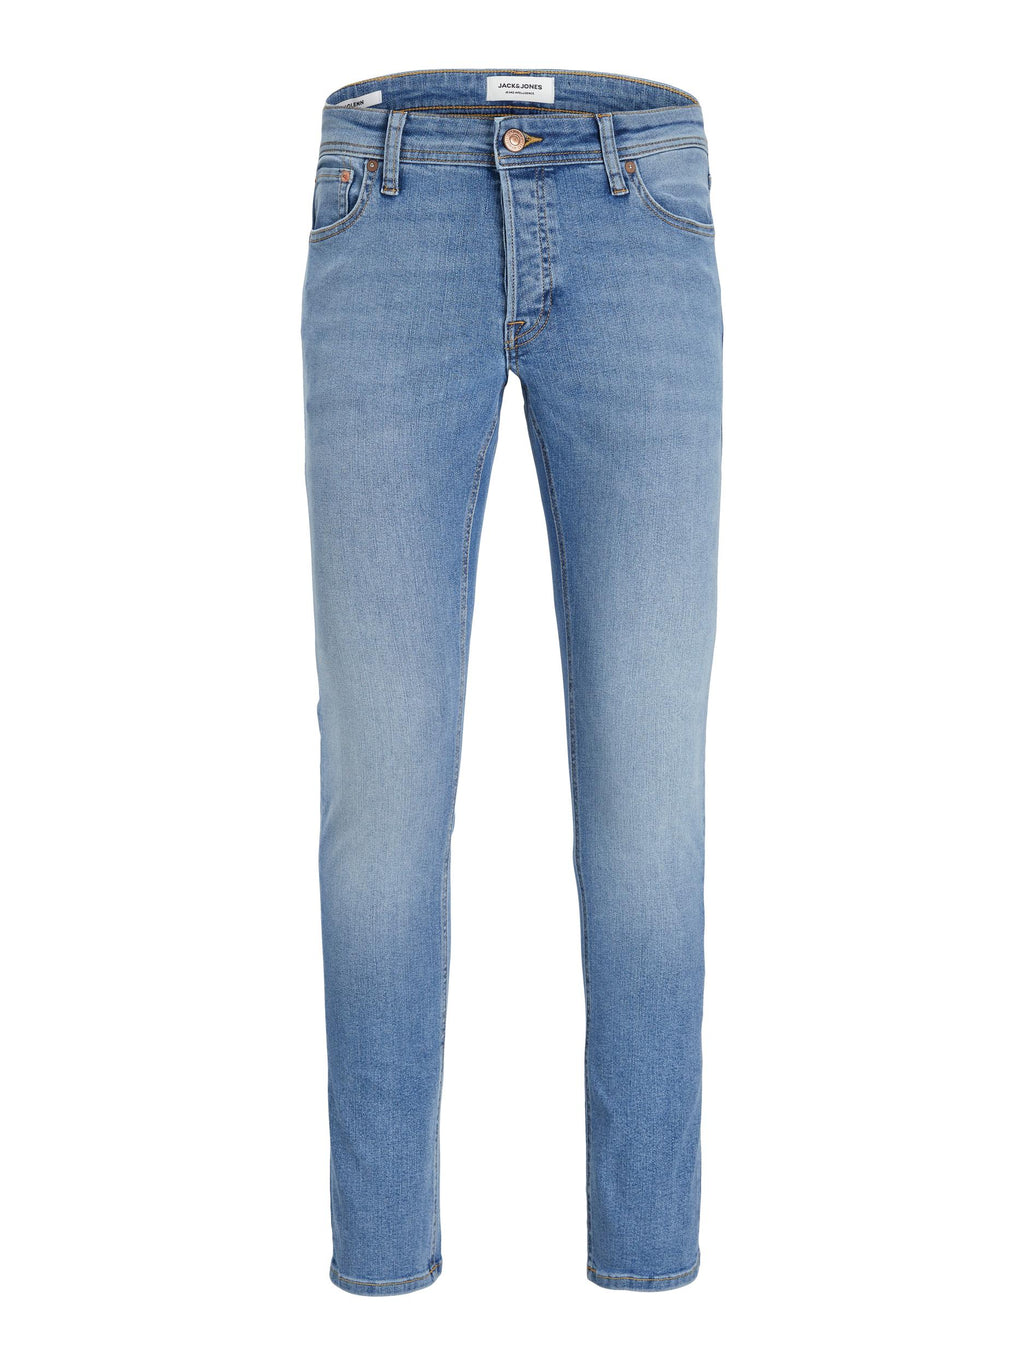 Jack & Jones Glenn MF 770 Slim Fit Jeans Blue Denim - Raw Menswear